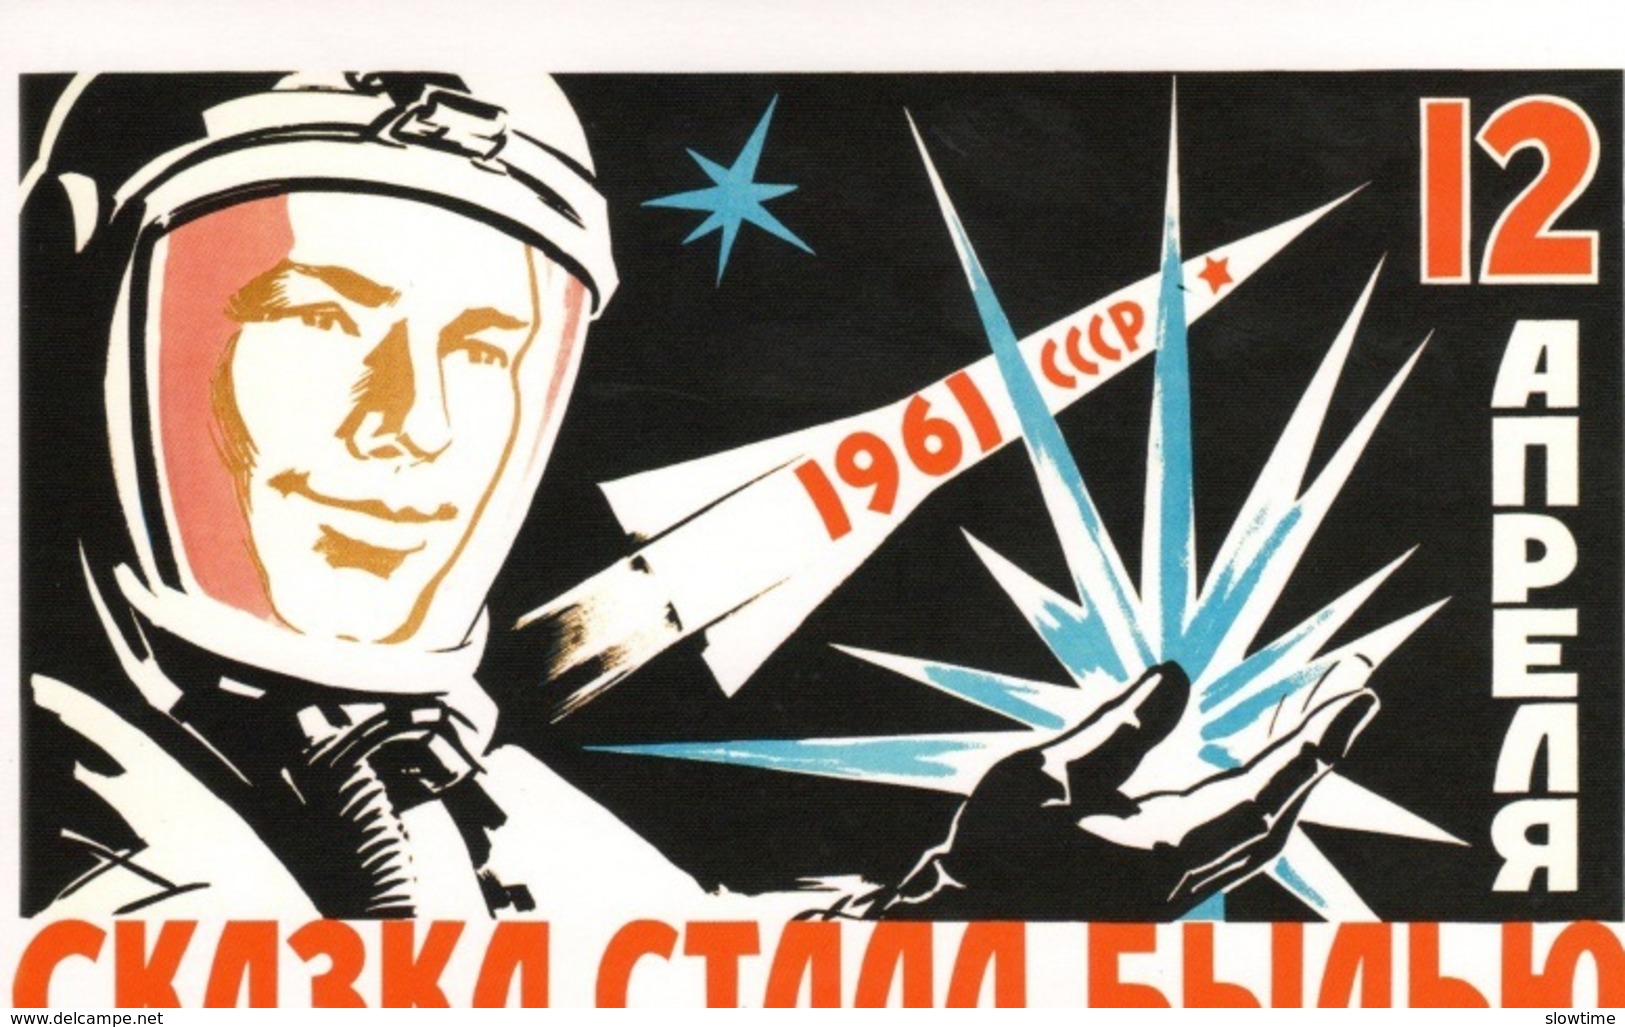 Jeu de 22 cartes postales de l'URSS période consacrée à l'espace des vols, Gagarine, la roquette, la propagande du PCUS